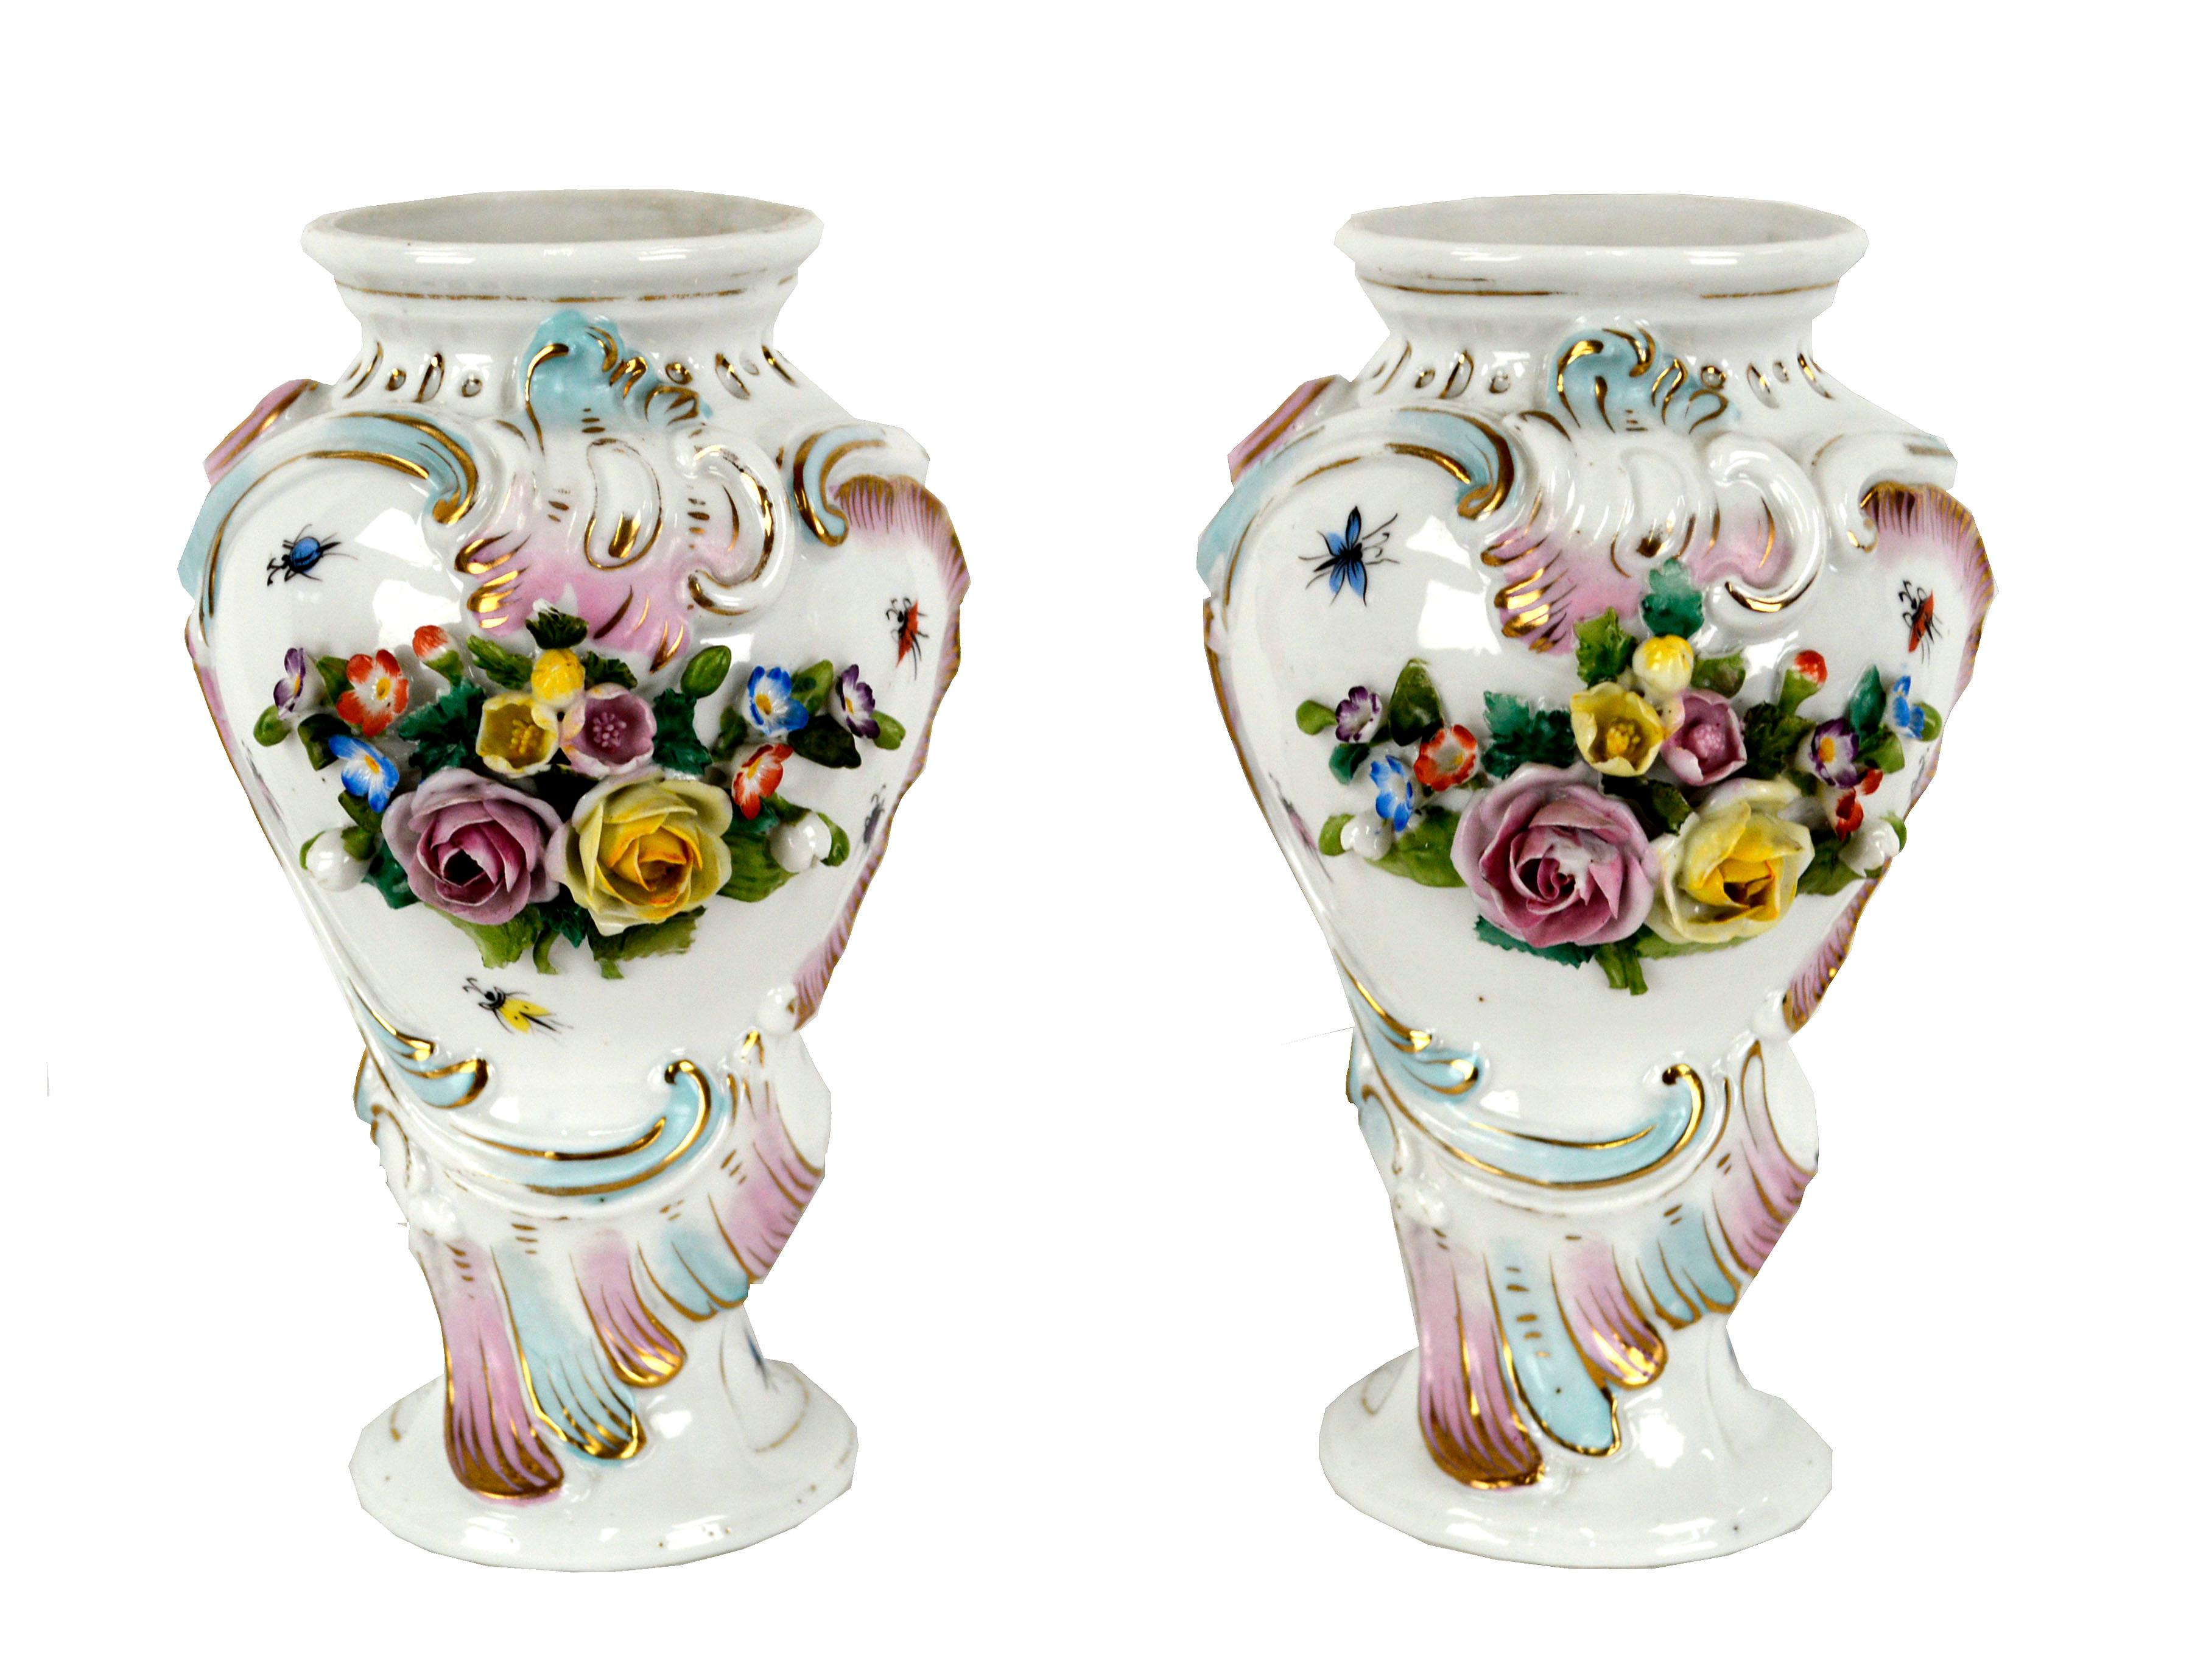 Paar exquisite Vasen aus königlichem Wiener Porzellan des 19. Jahrhunderts. Diese Vasen sind ein schönes Beispiel für den österreichischen Neoklassizismus und mit einem kunstvollen Gartenblumenmotiv verziert. Verkrustet mit skulpturalen Sträußen aus